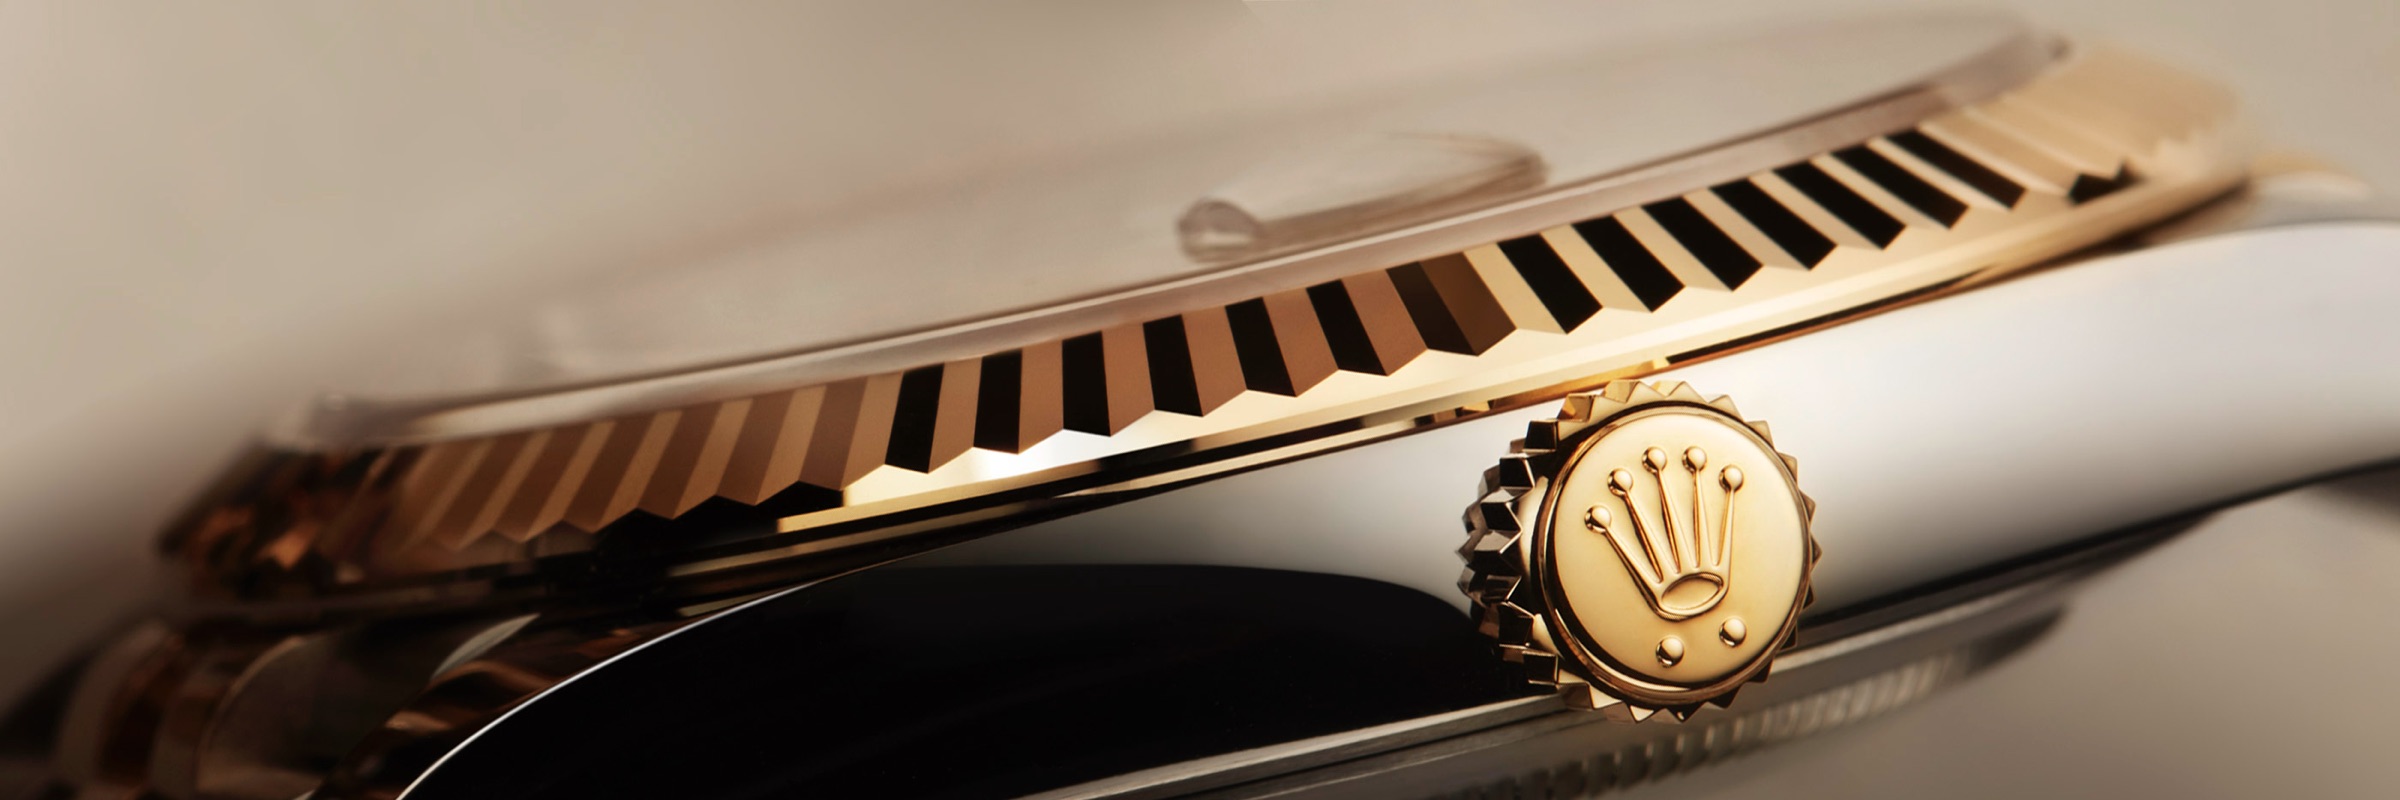 Rolex Uhren bei Juwelier Lepple in Esslingen